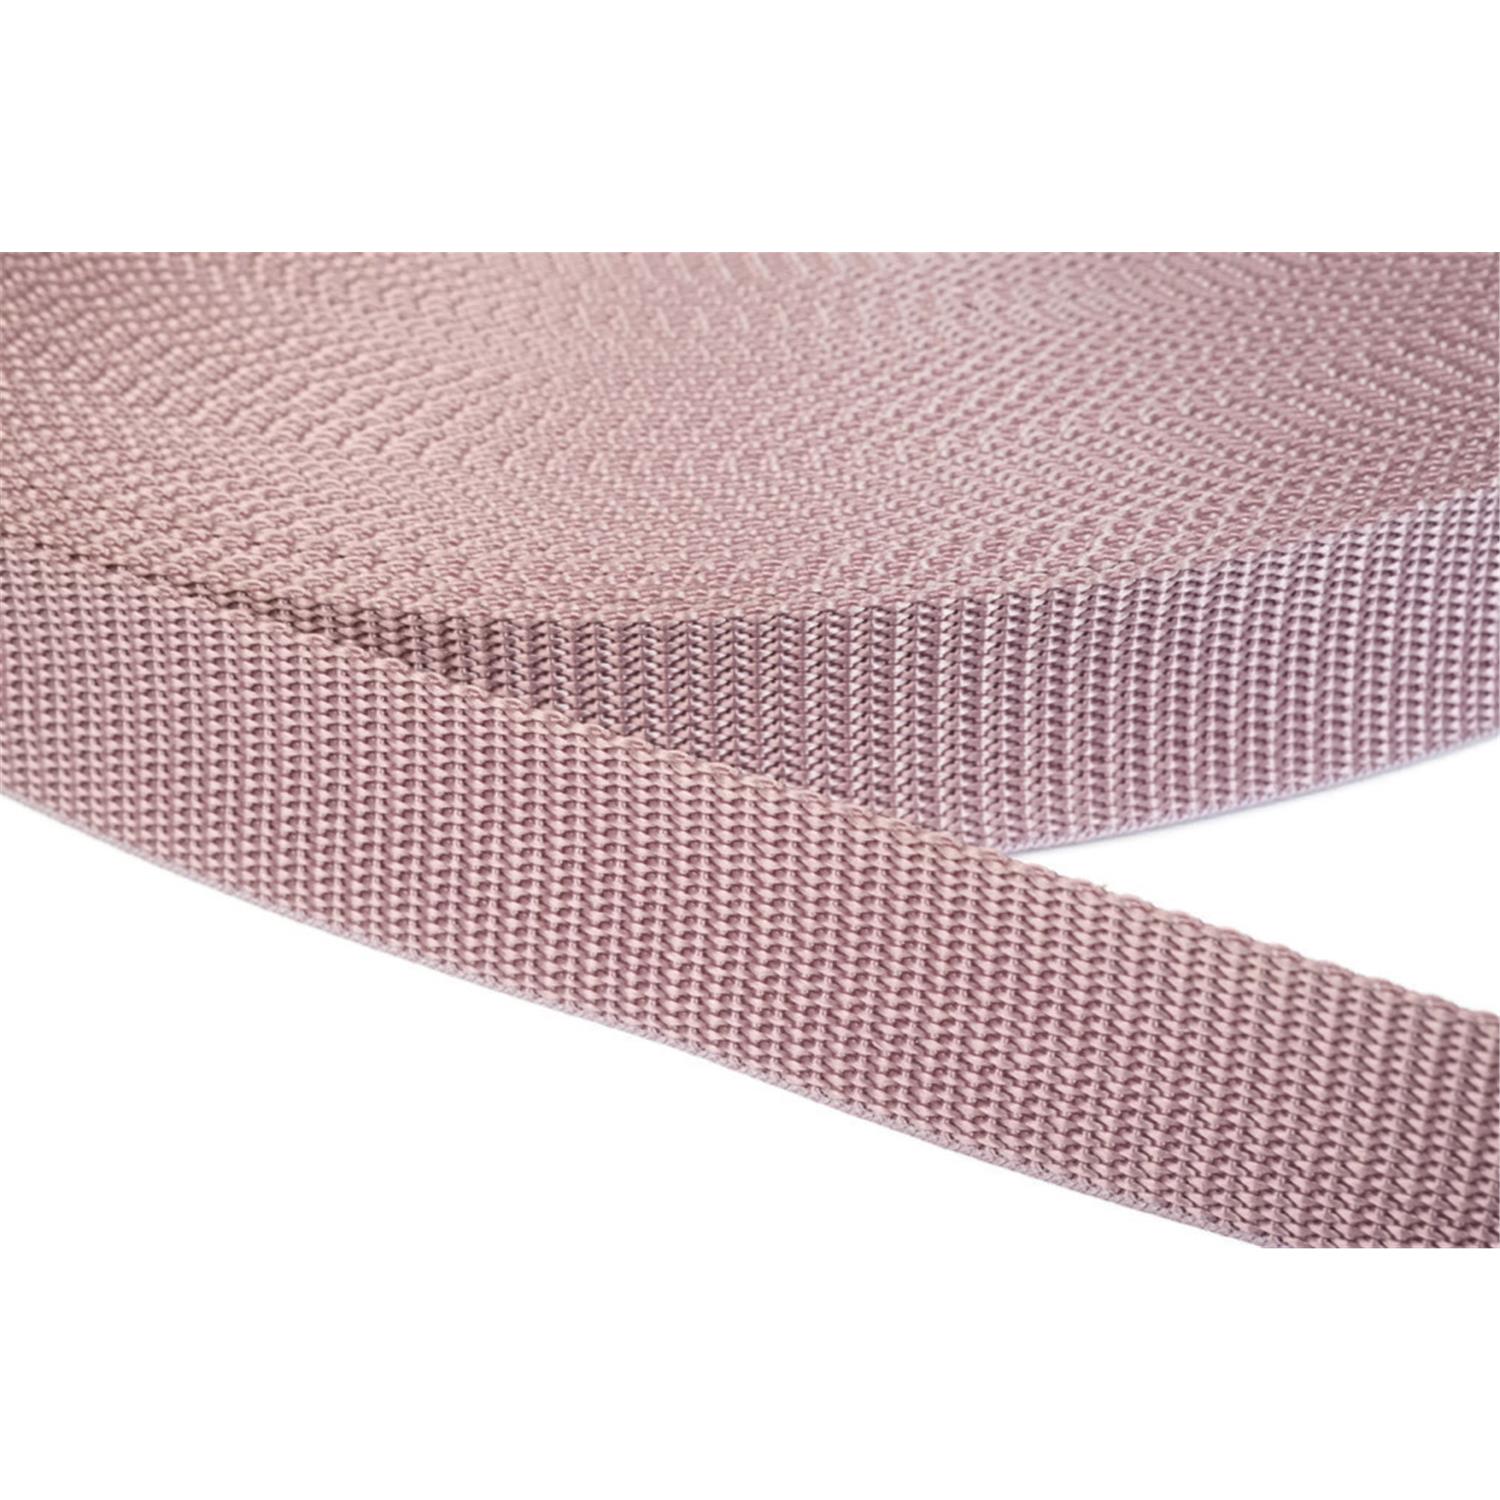 Gurtband 25mm breit aus Polypropylen in 41 Farben 15 - altrosa 12 Meter